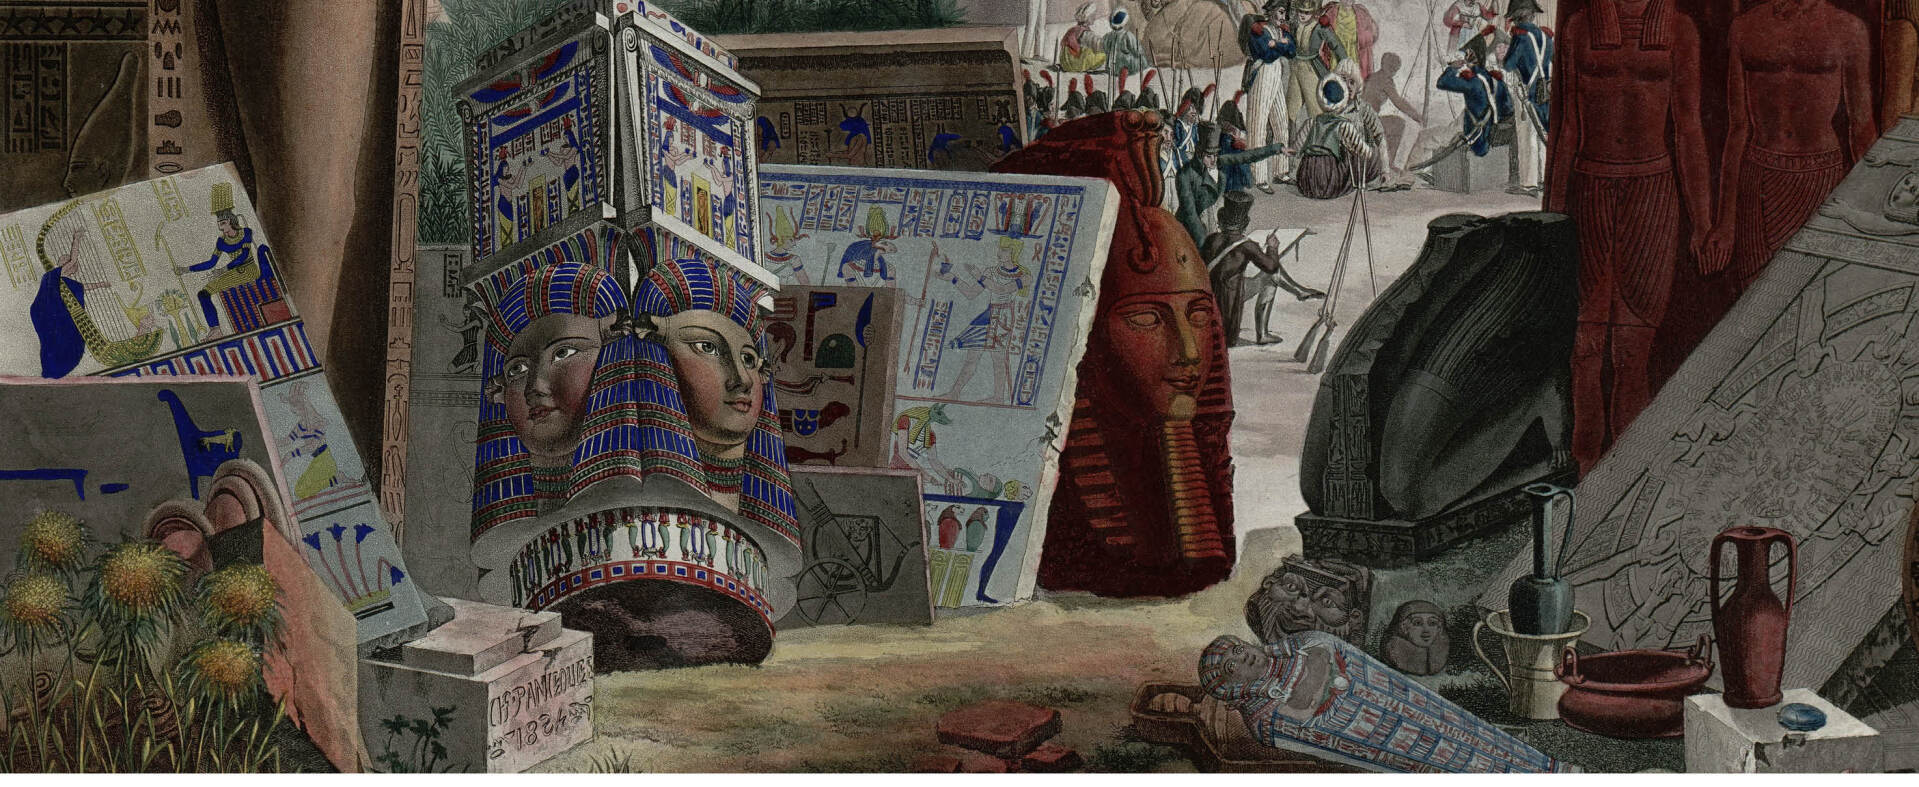 إعادة اكتشاف مصر القديمة: رحلة عبر كتاب "وصف مصر"